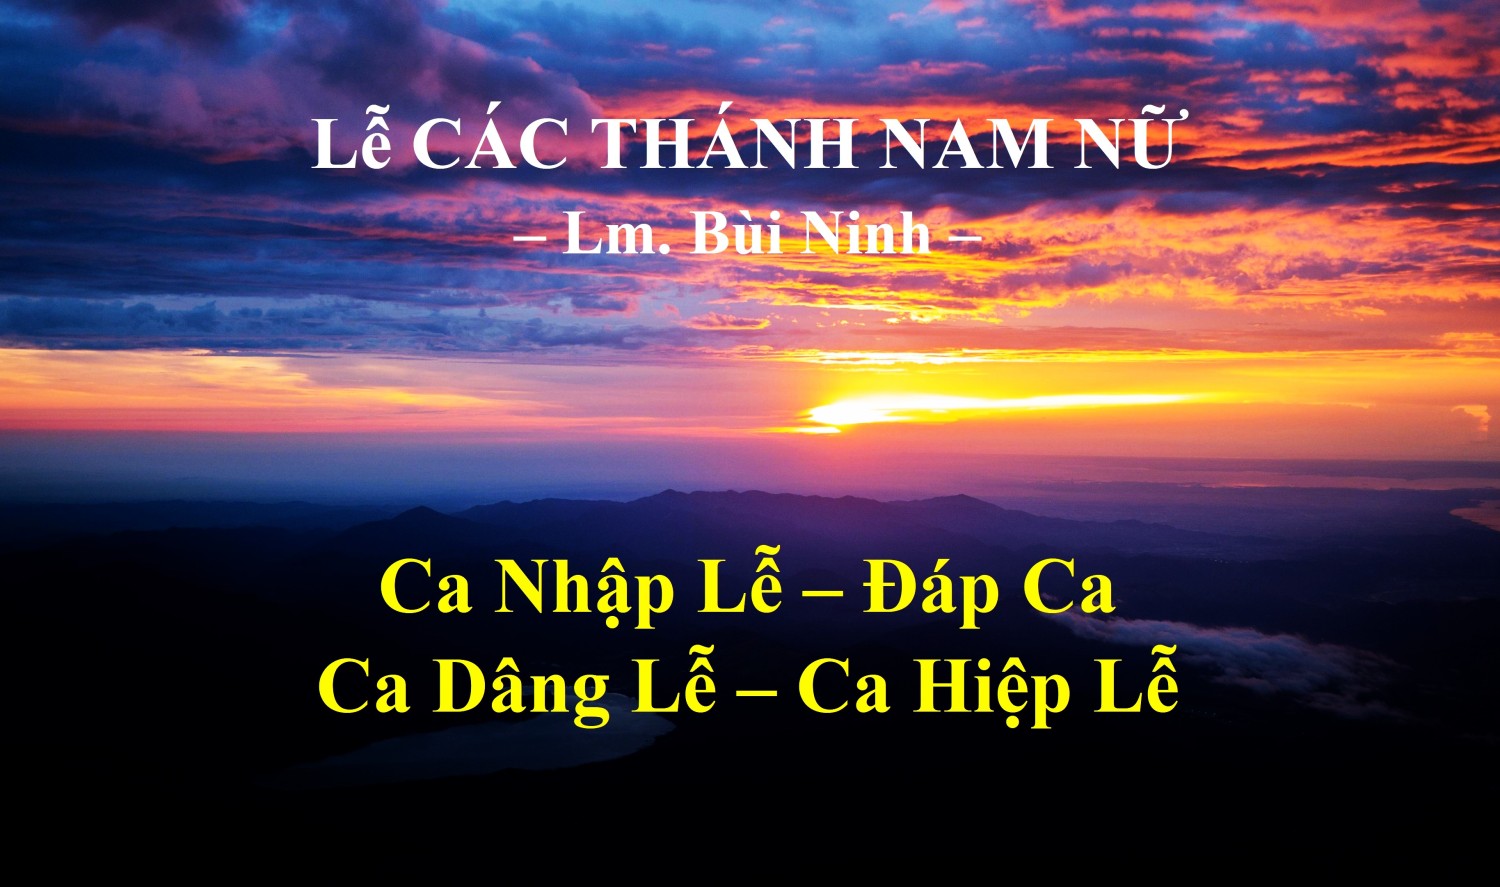 Lễ Các Thánh Nam Nữ (01-11) – Nguyện Ca & Đáp Ca  – Lm. Bùi Ninh